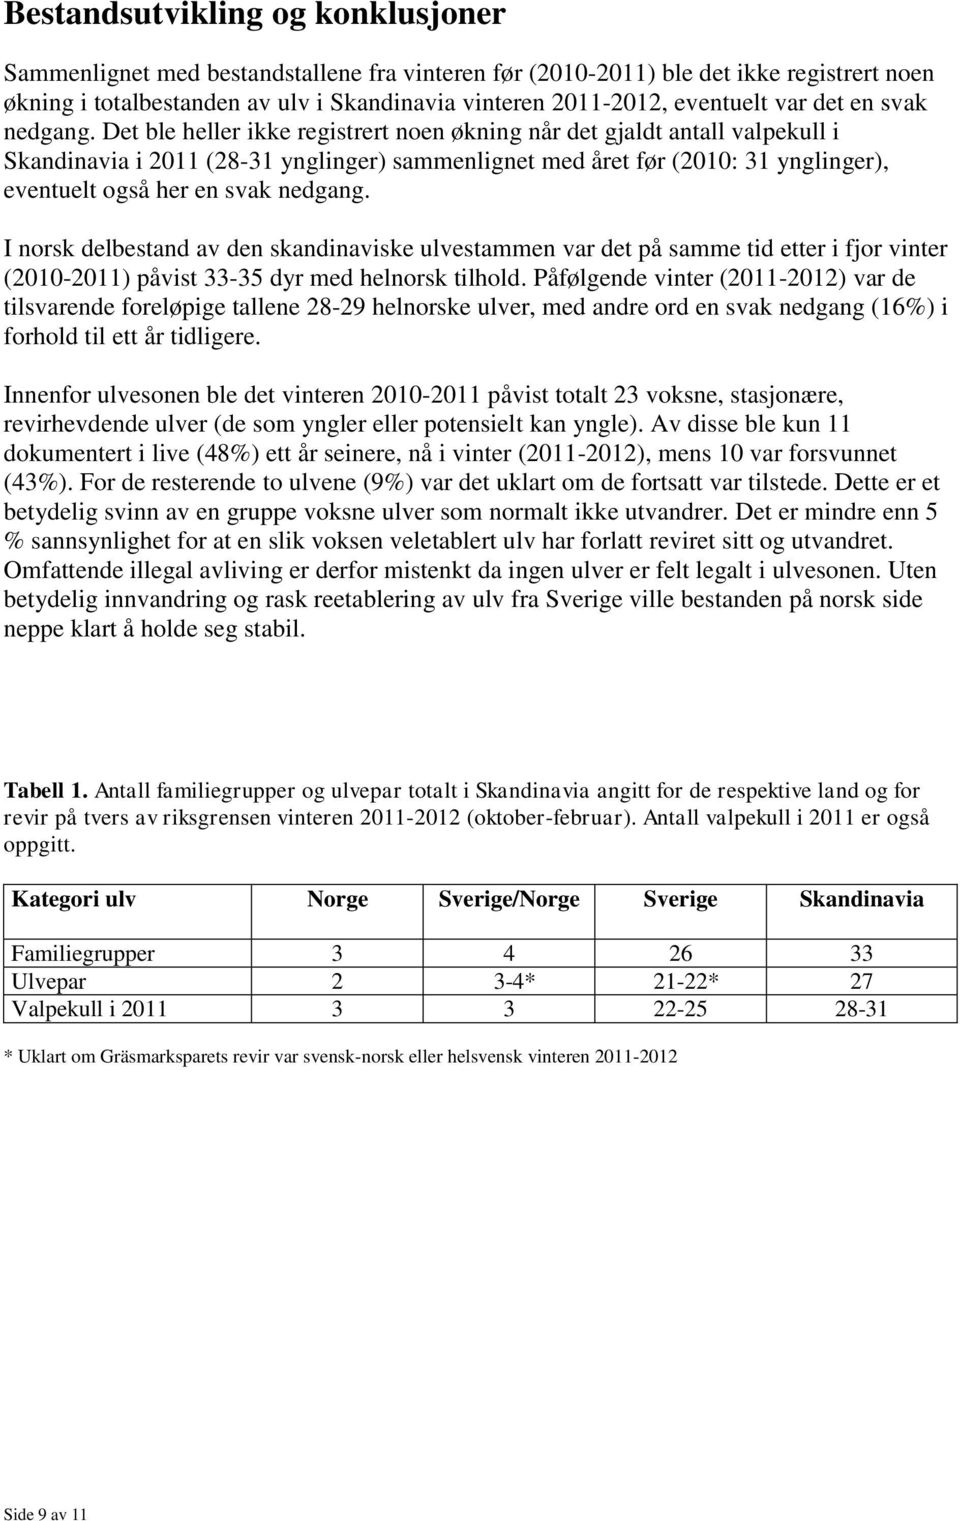 Det ble heller ikke registrert noen økning når det gjaldt antall valpekull i Skandinavia i 2011 (28-31 ynglinger) sammenlignet med året før (2010: 31 ynglinger), eventuelt også her en svak nedgang.